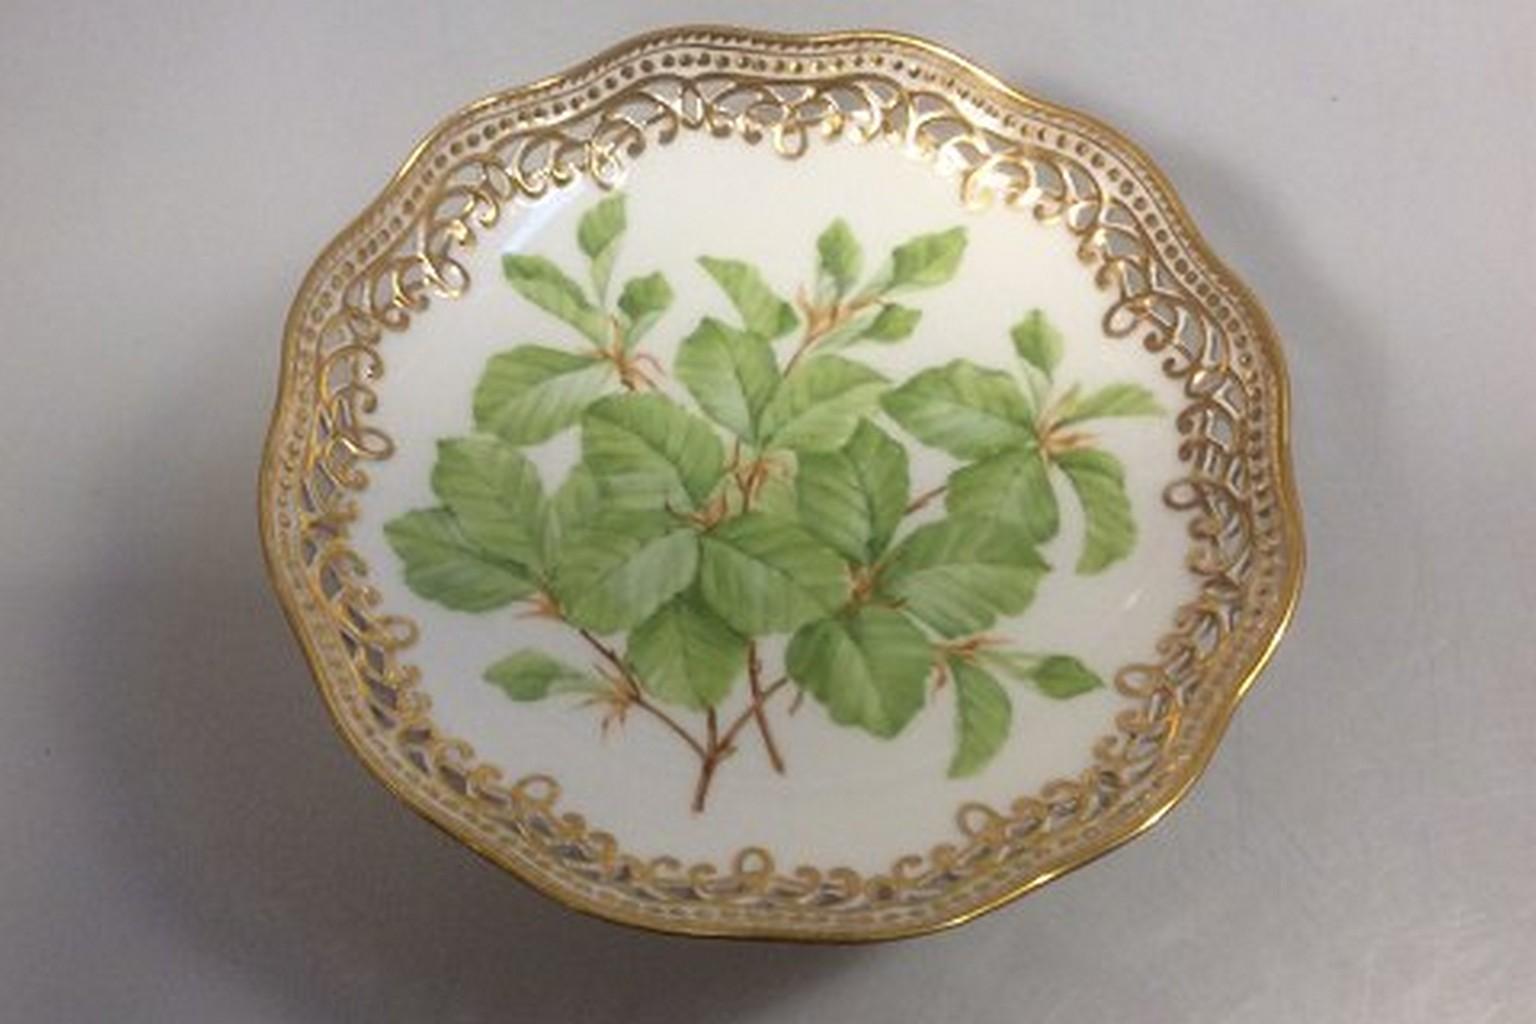 Royal Copenhagen Flora Danica pedistal bowl, antique.

Measures: 20cm x 10cm (7 9/10